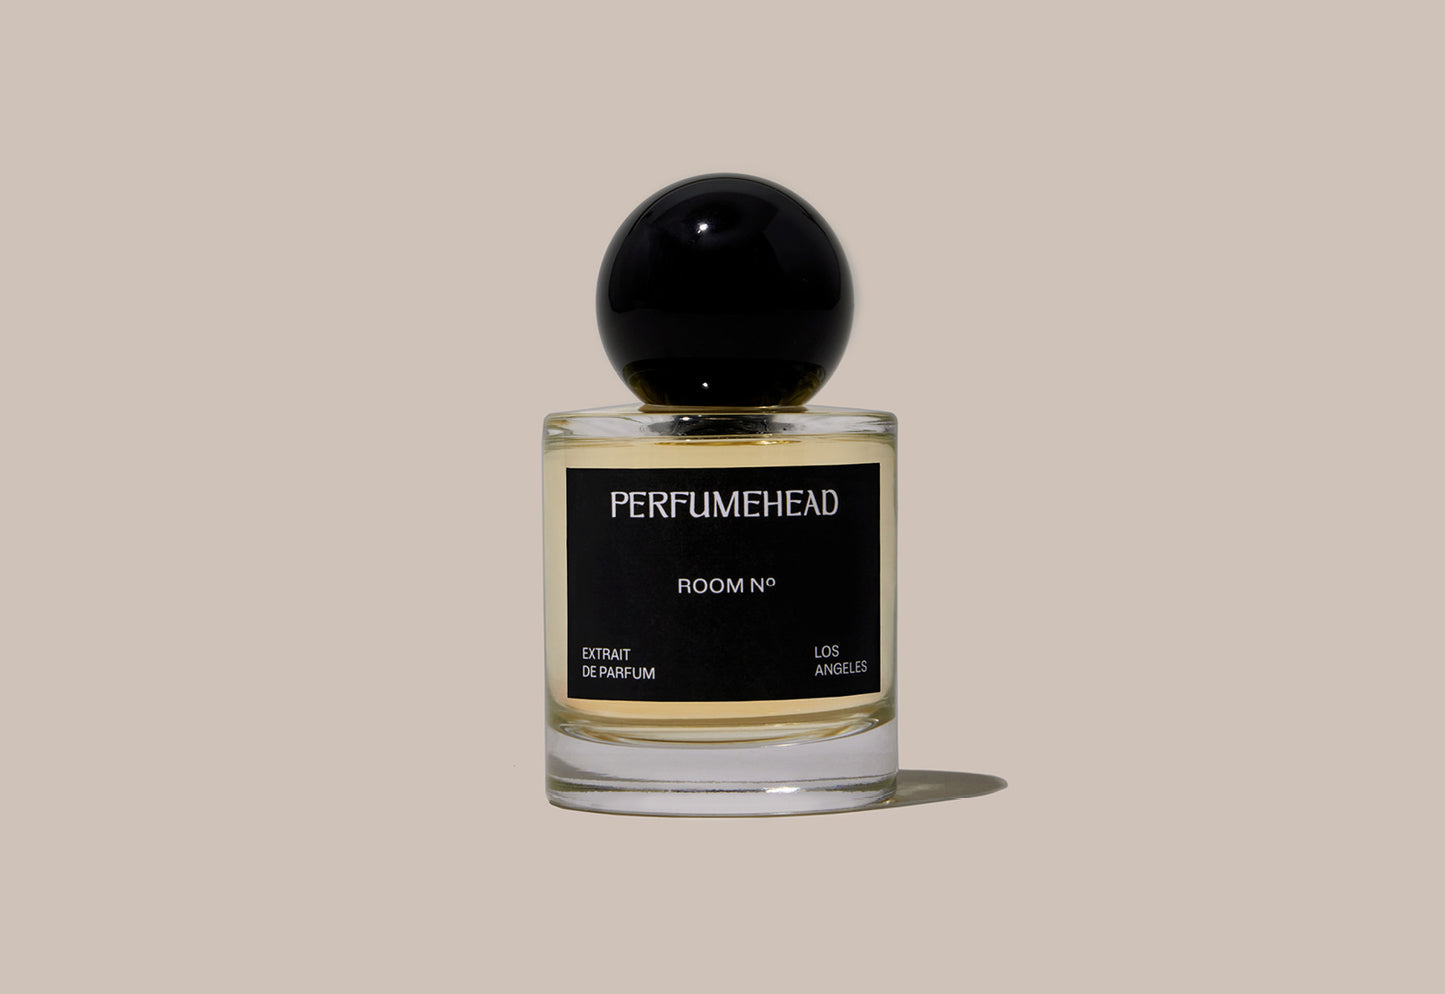 Room No. extrait de parfum by Perfumehead. 50ml bottle.